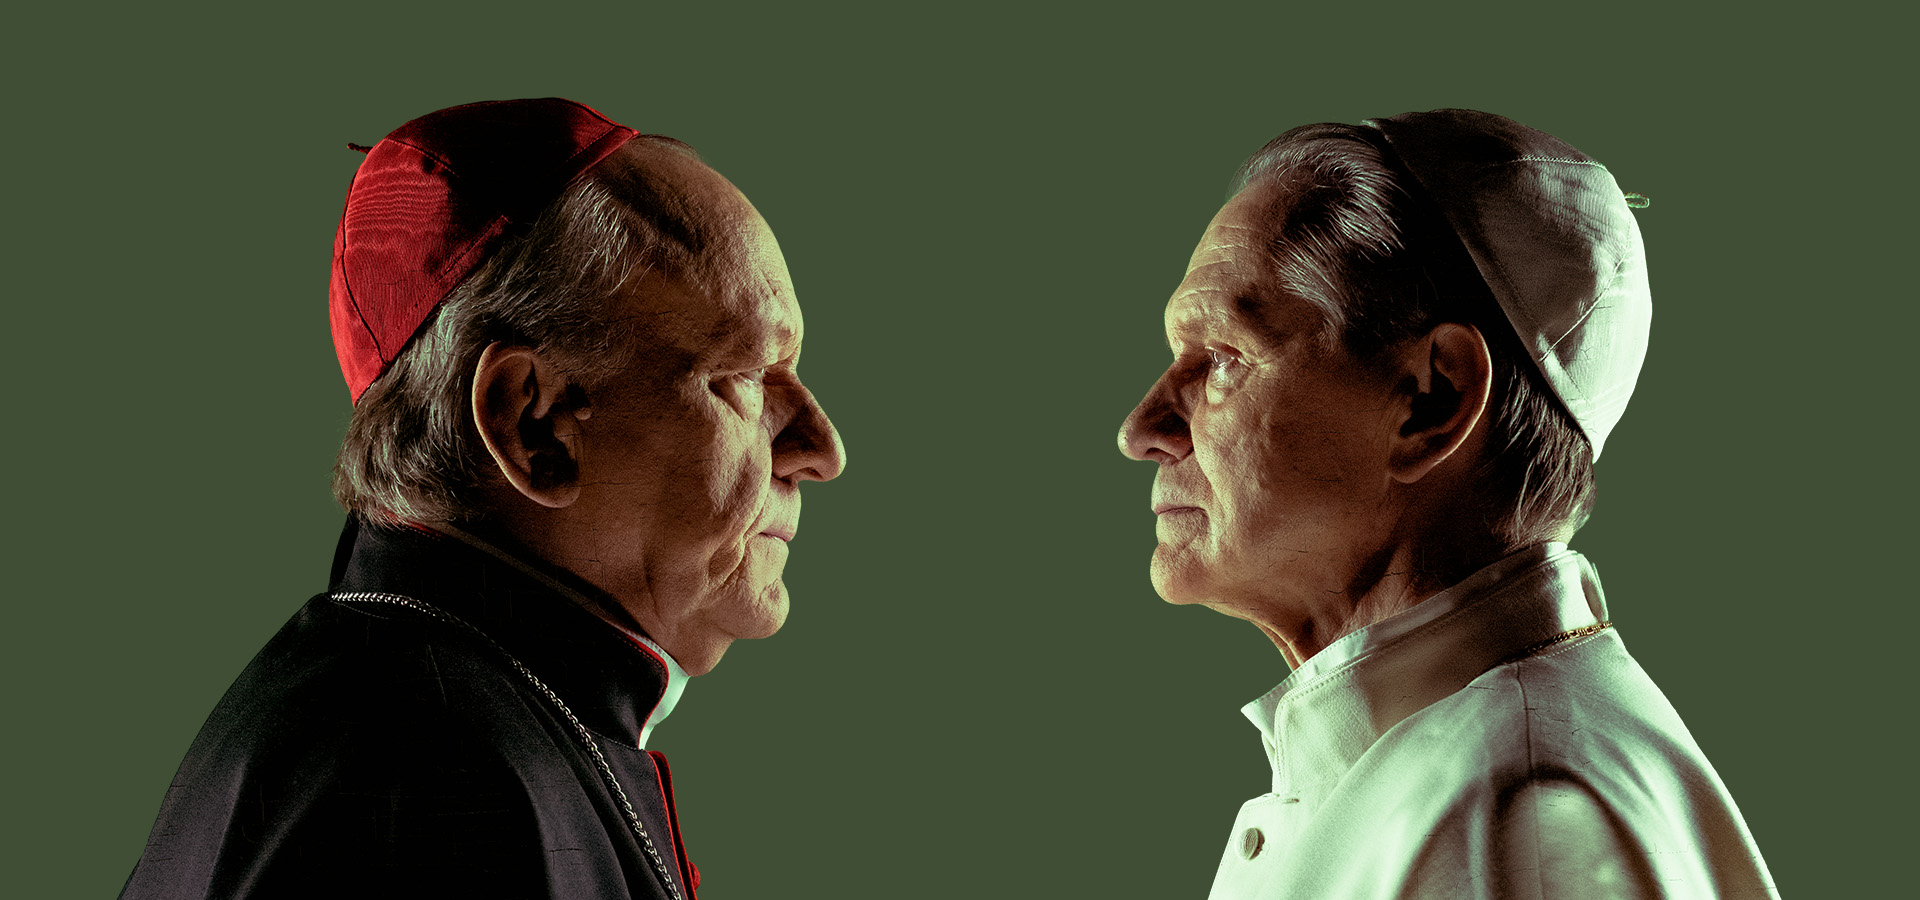 Paavi ja kardinaali seisovat vastakkain, mittaavat katseellaan toisiaan.